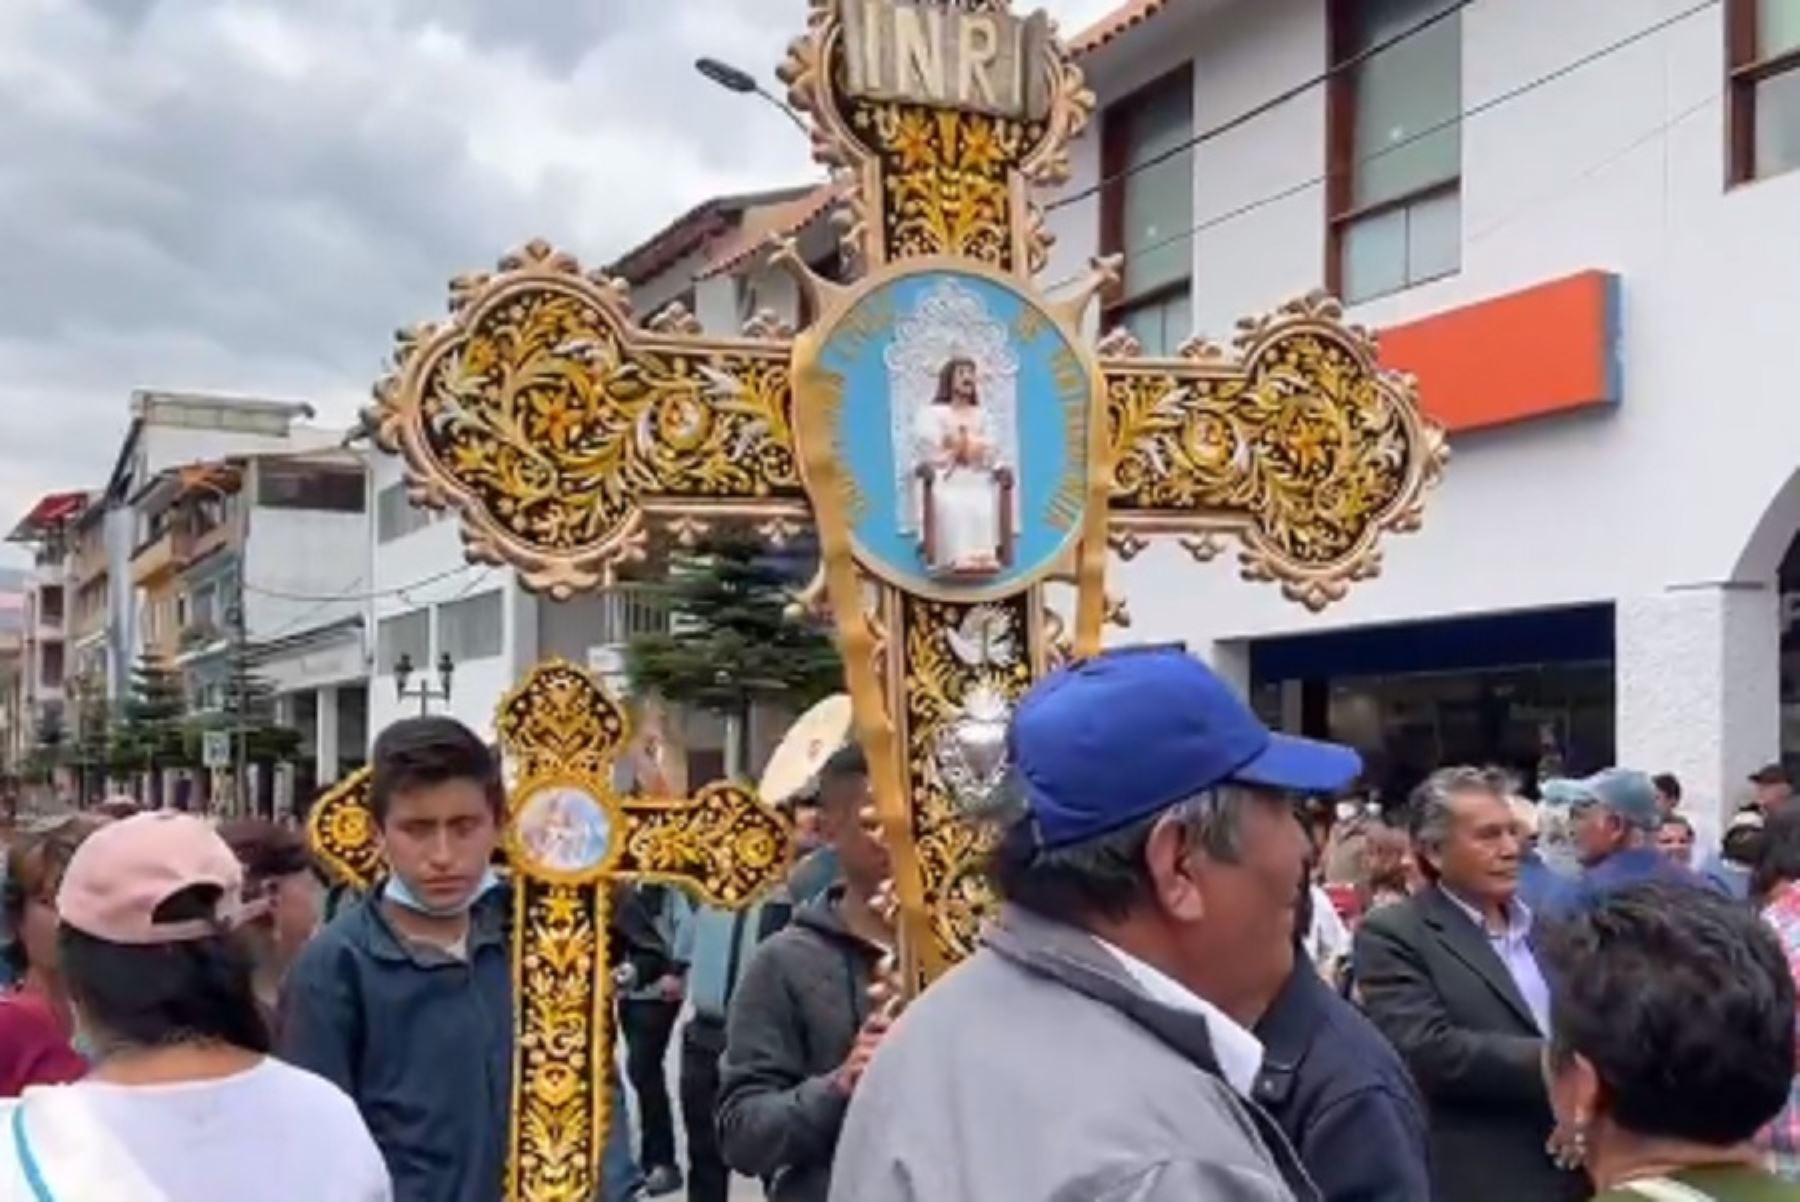 En setiembre de cada año la ciudad de Huaraz, capital de la región Áncash, así como otras localidades de ese departamento, celebran una de sus festividades más emblemáticas: la Exaltación de la Santa Cruz, que congrega a una multitud de fieles que participan en procesiones que recorren la ciudad.